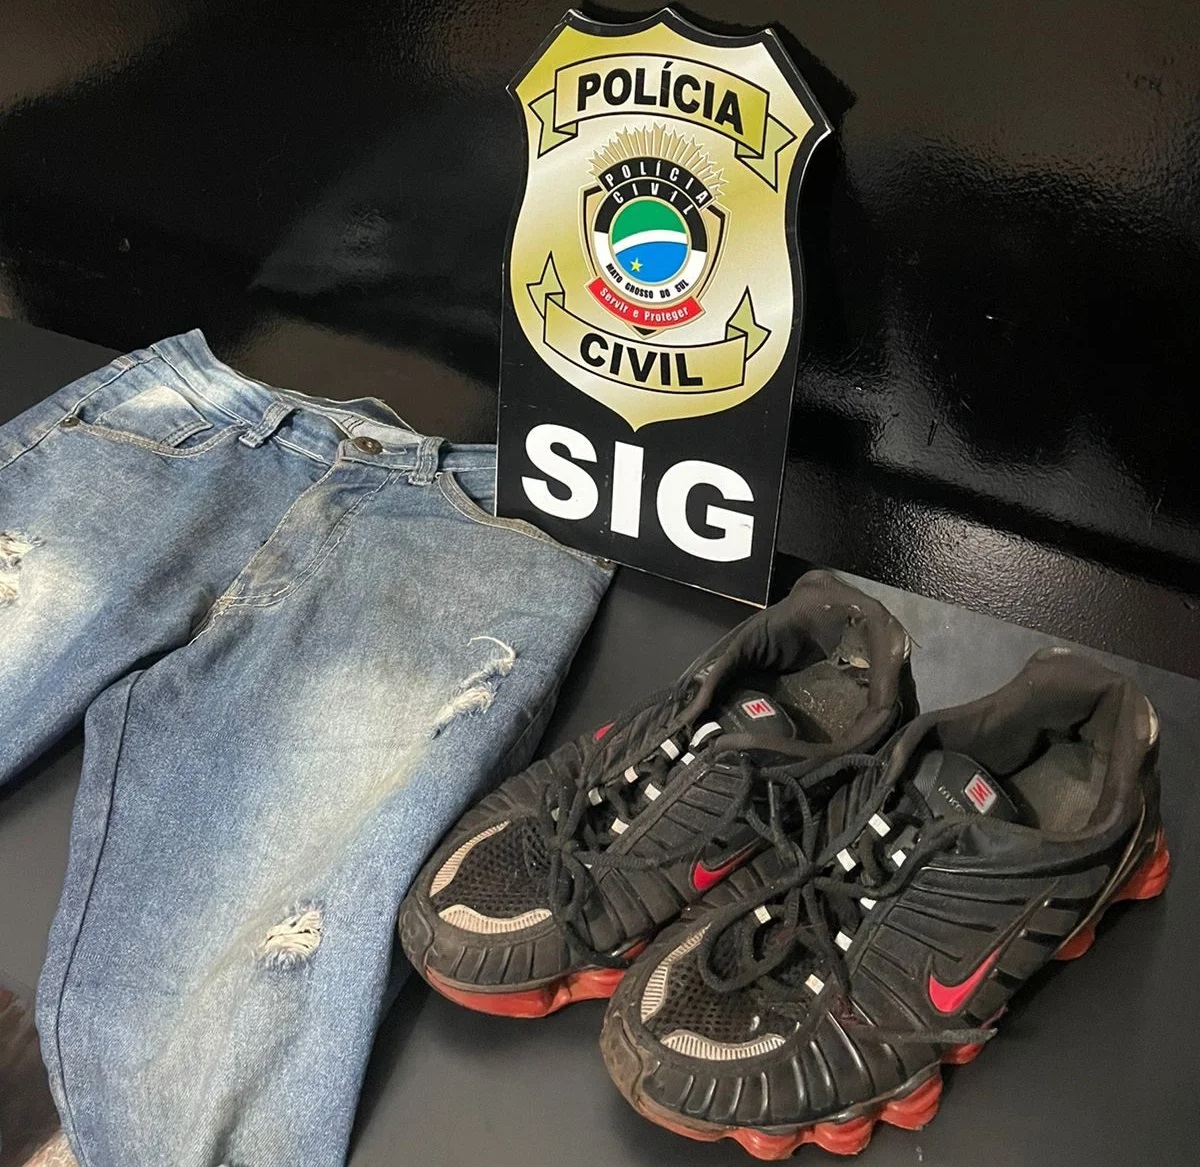 Calça jeans e tênis do suspeito utilizados no dia do crime – Foto: Jornal da Nova